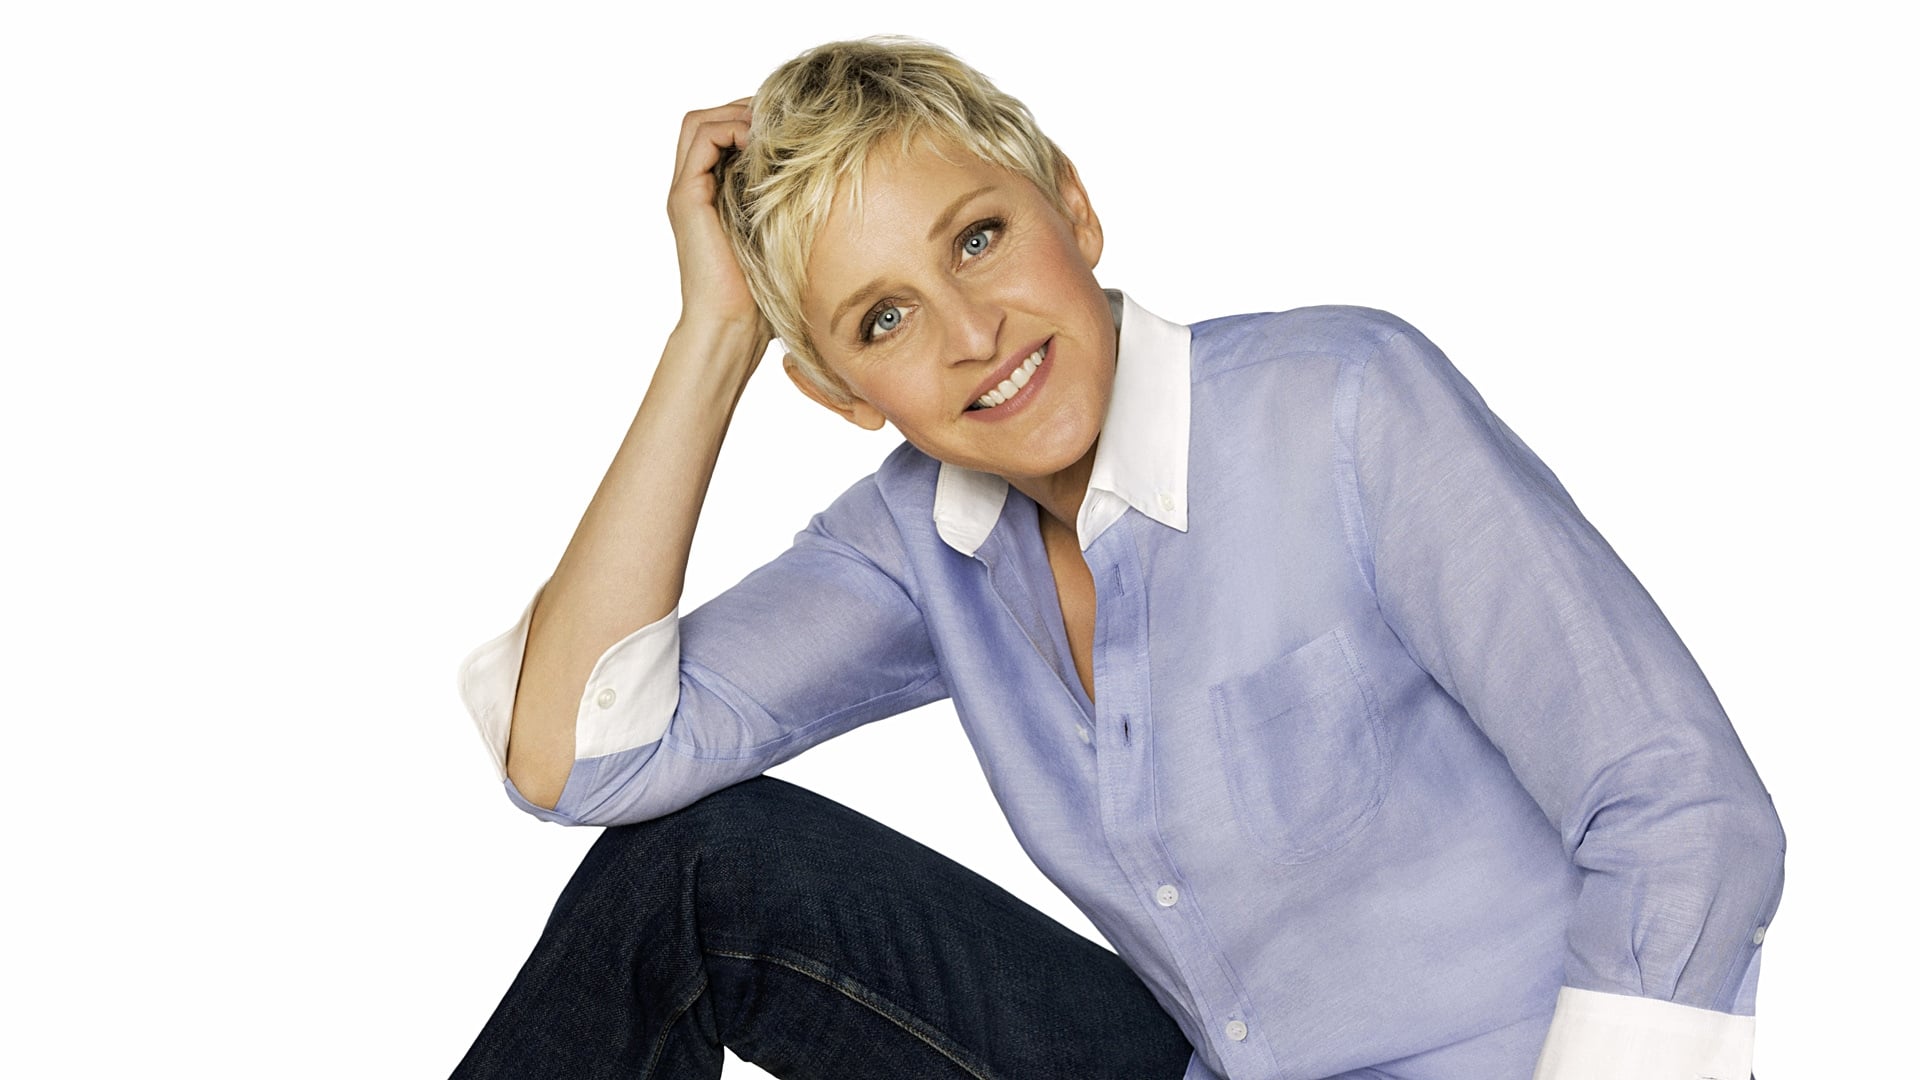 The Ellen DeGeneres Show - Season 14 Episode 57 : Day 3 of 12 Days, Mariah Carey, Leah Remini, Brilliant Brielle